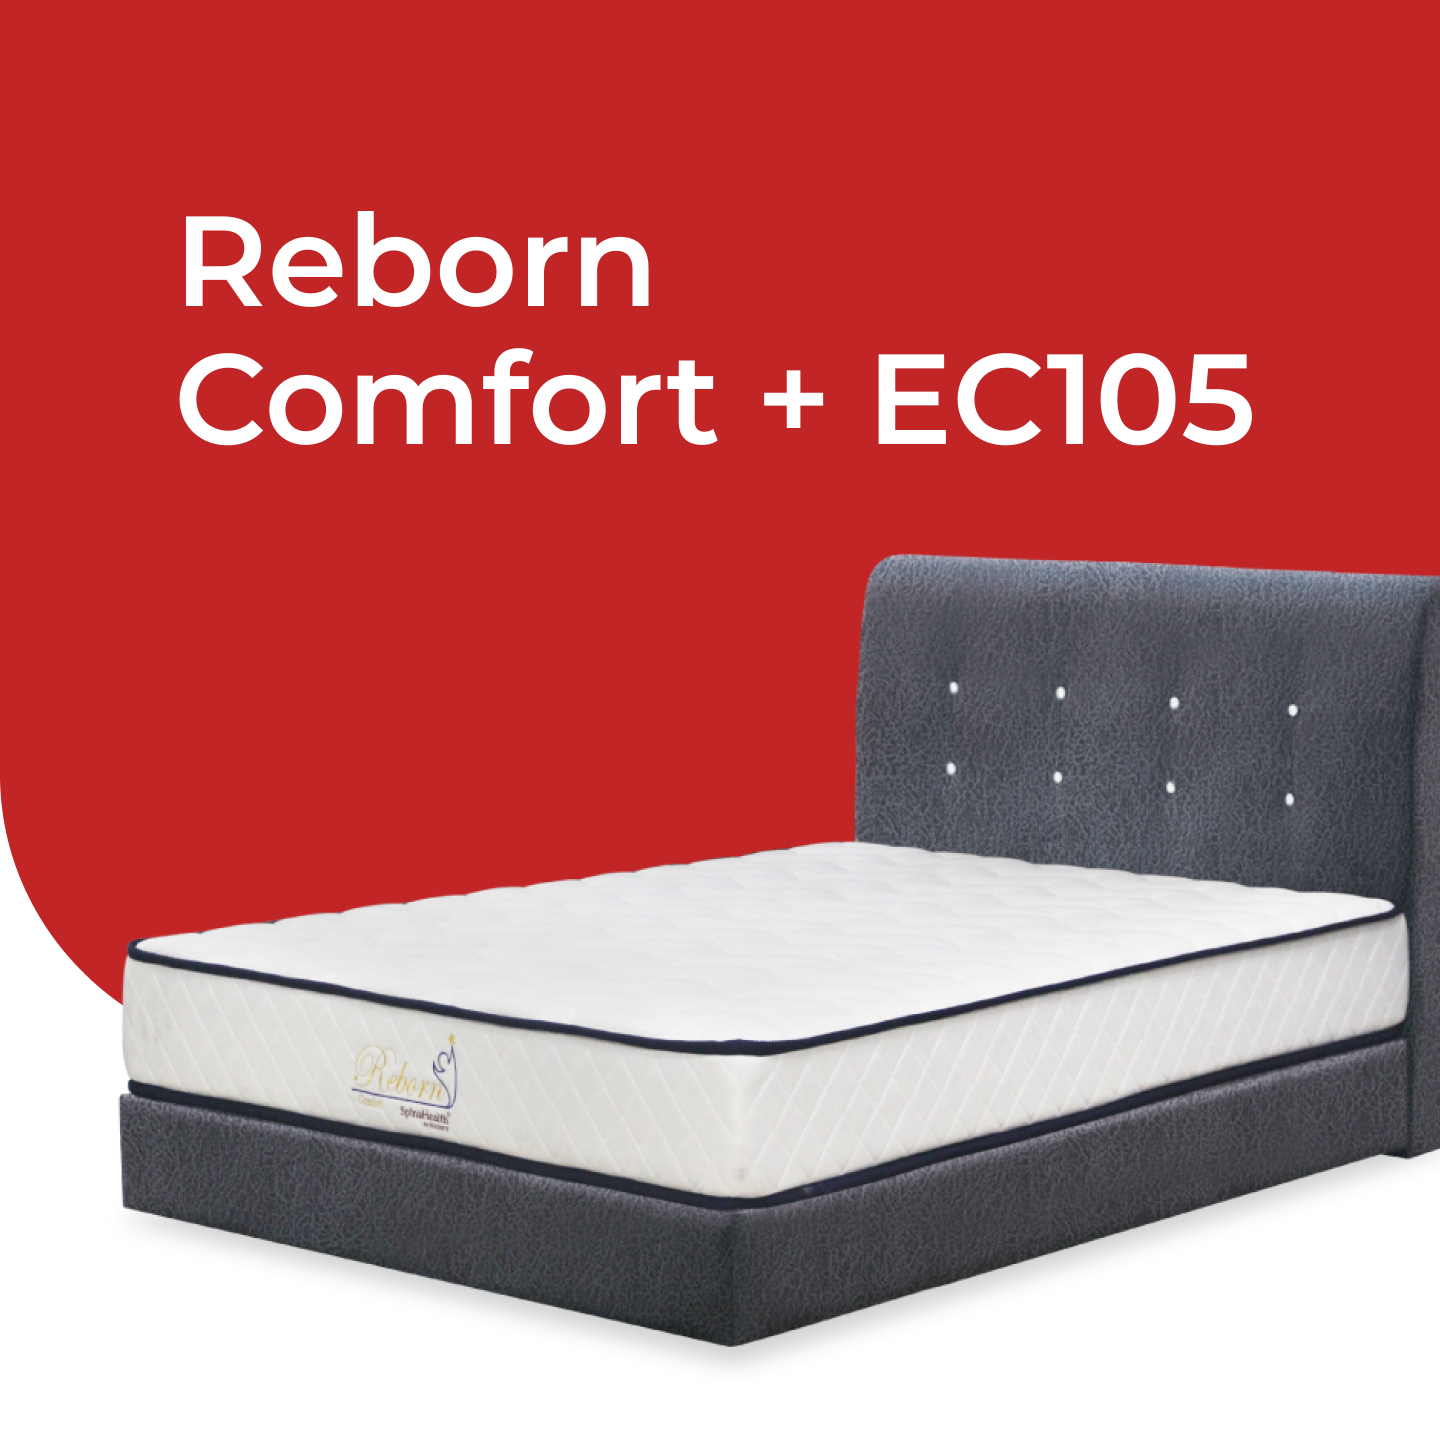 Reborn Comfort +EC105 1.jpg